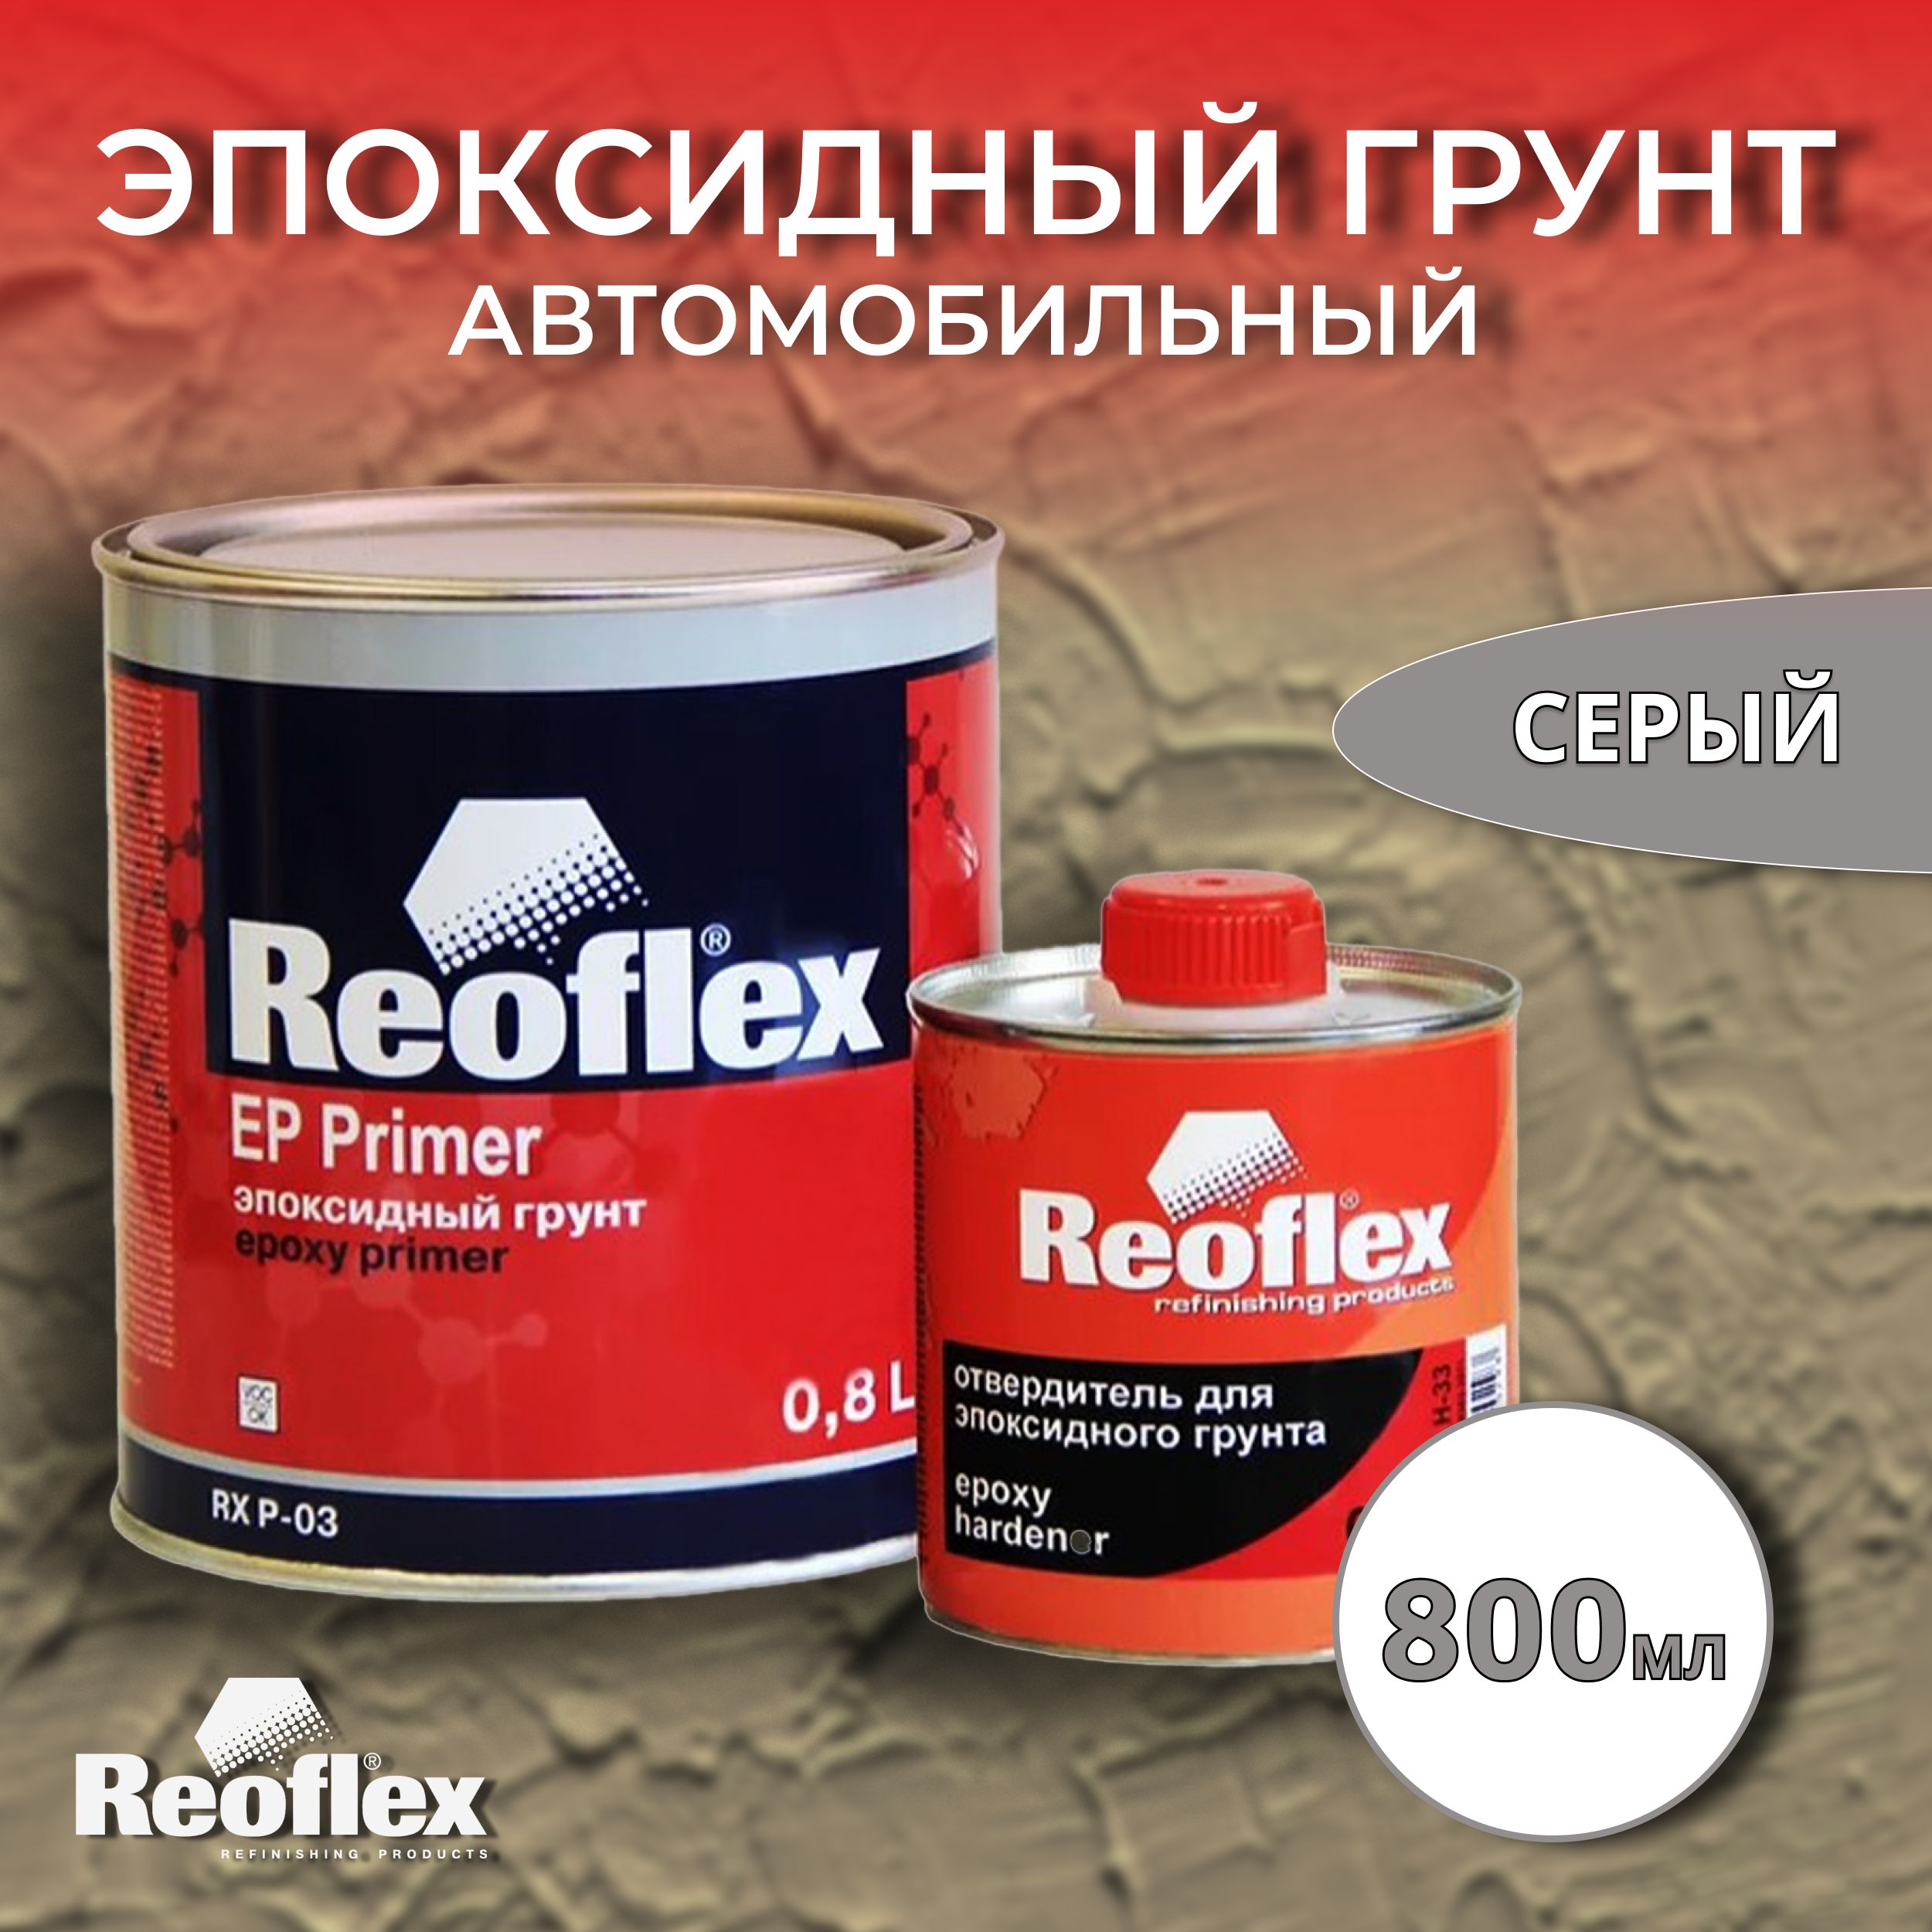 Сколько сохнет эпоксидный грунт. Reoflex эпоксидный грунт. Reoflex Ep primer RX P-03. Reoflex грунт 2к эпоксидный Ep primer (0,8л+0,2л). Грунт эпоксидный JETAPRO Reoflex/6 2k 800 мл.